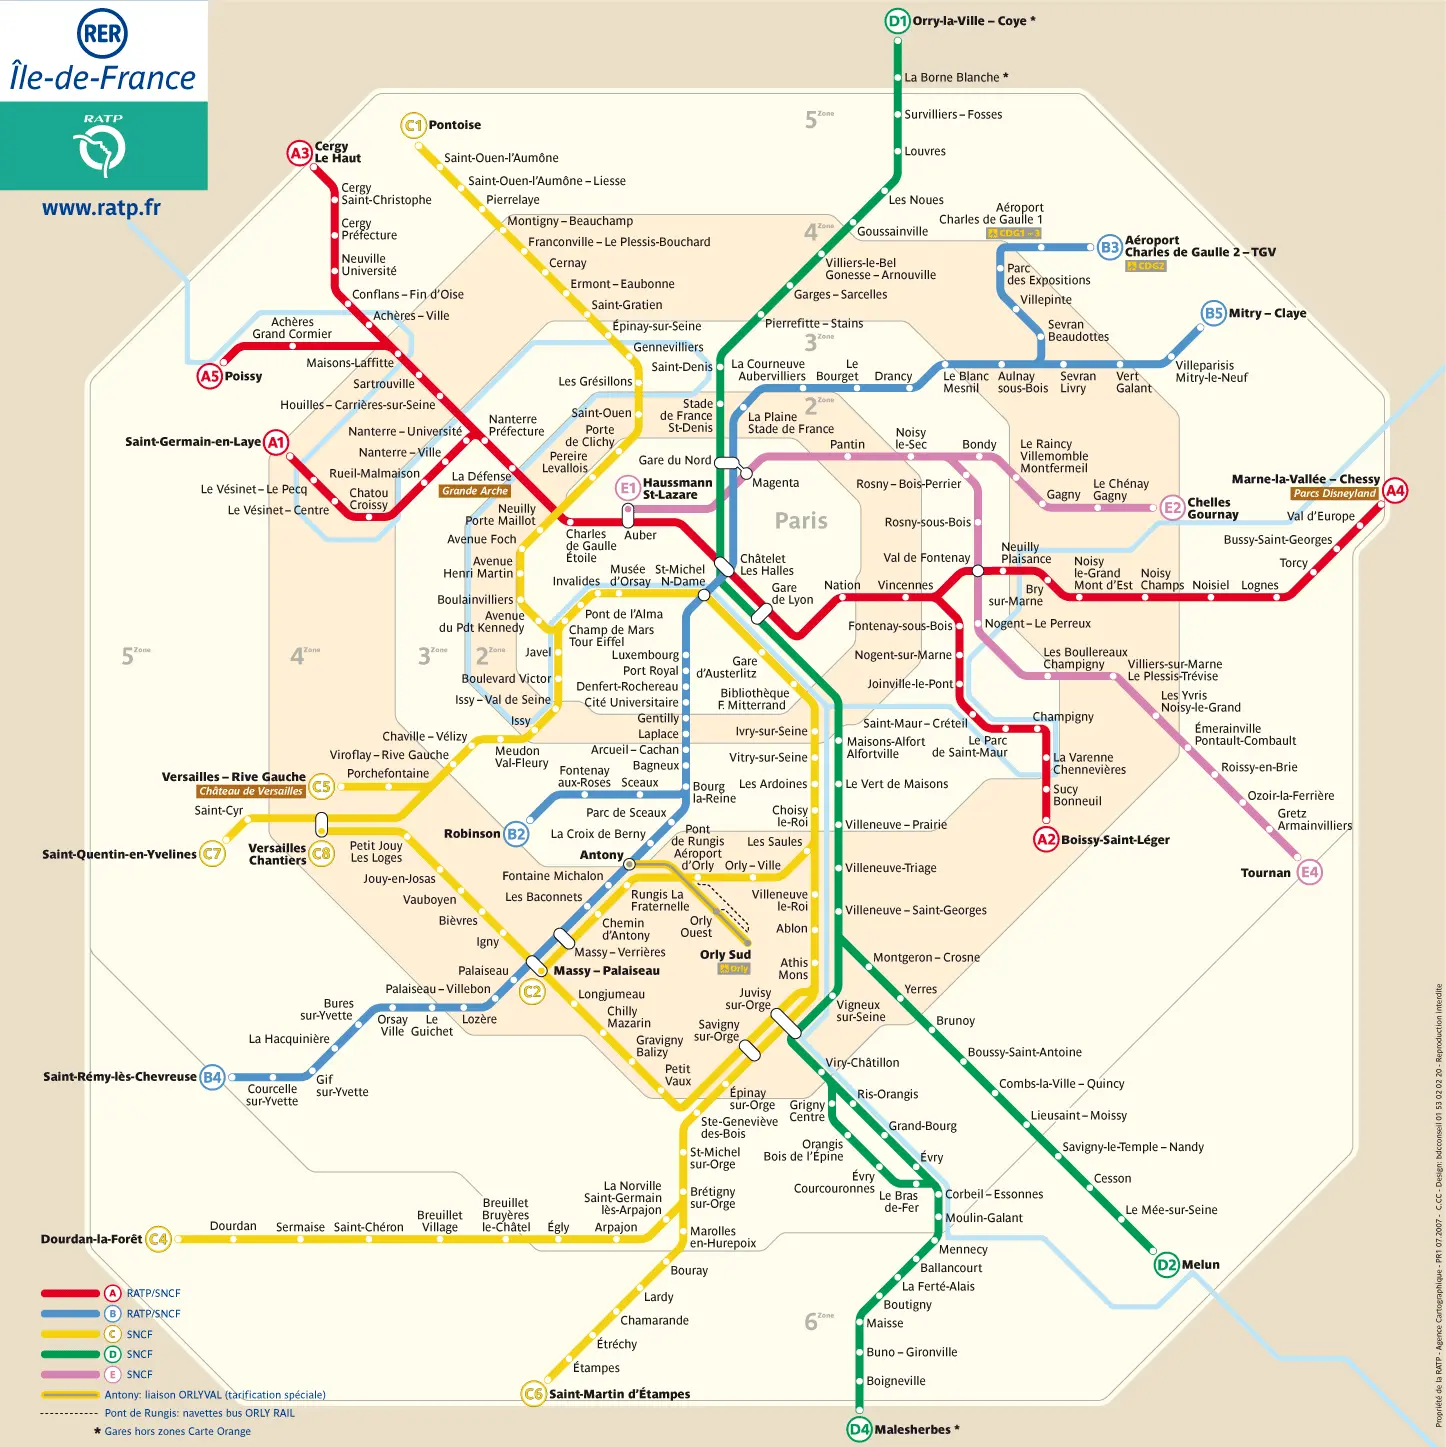 horario tren paris - Cómo funciona el RER en París